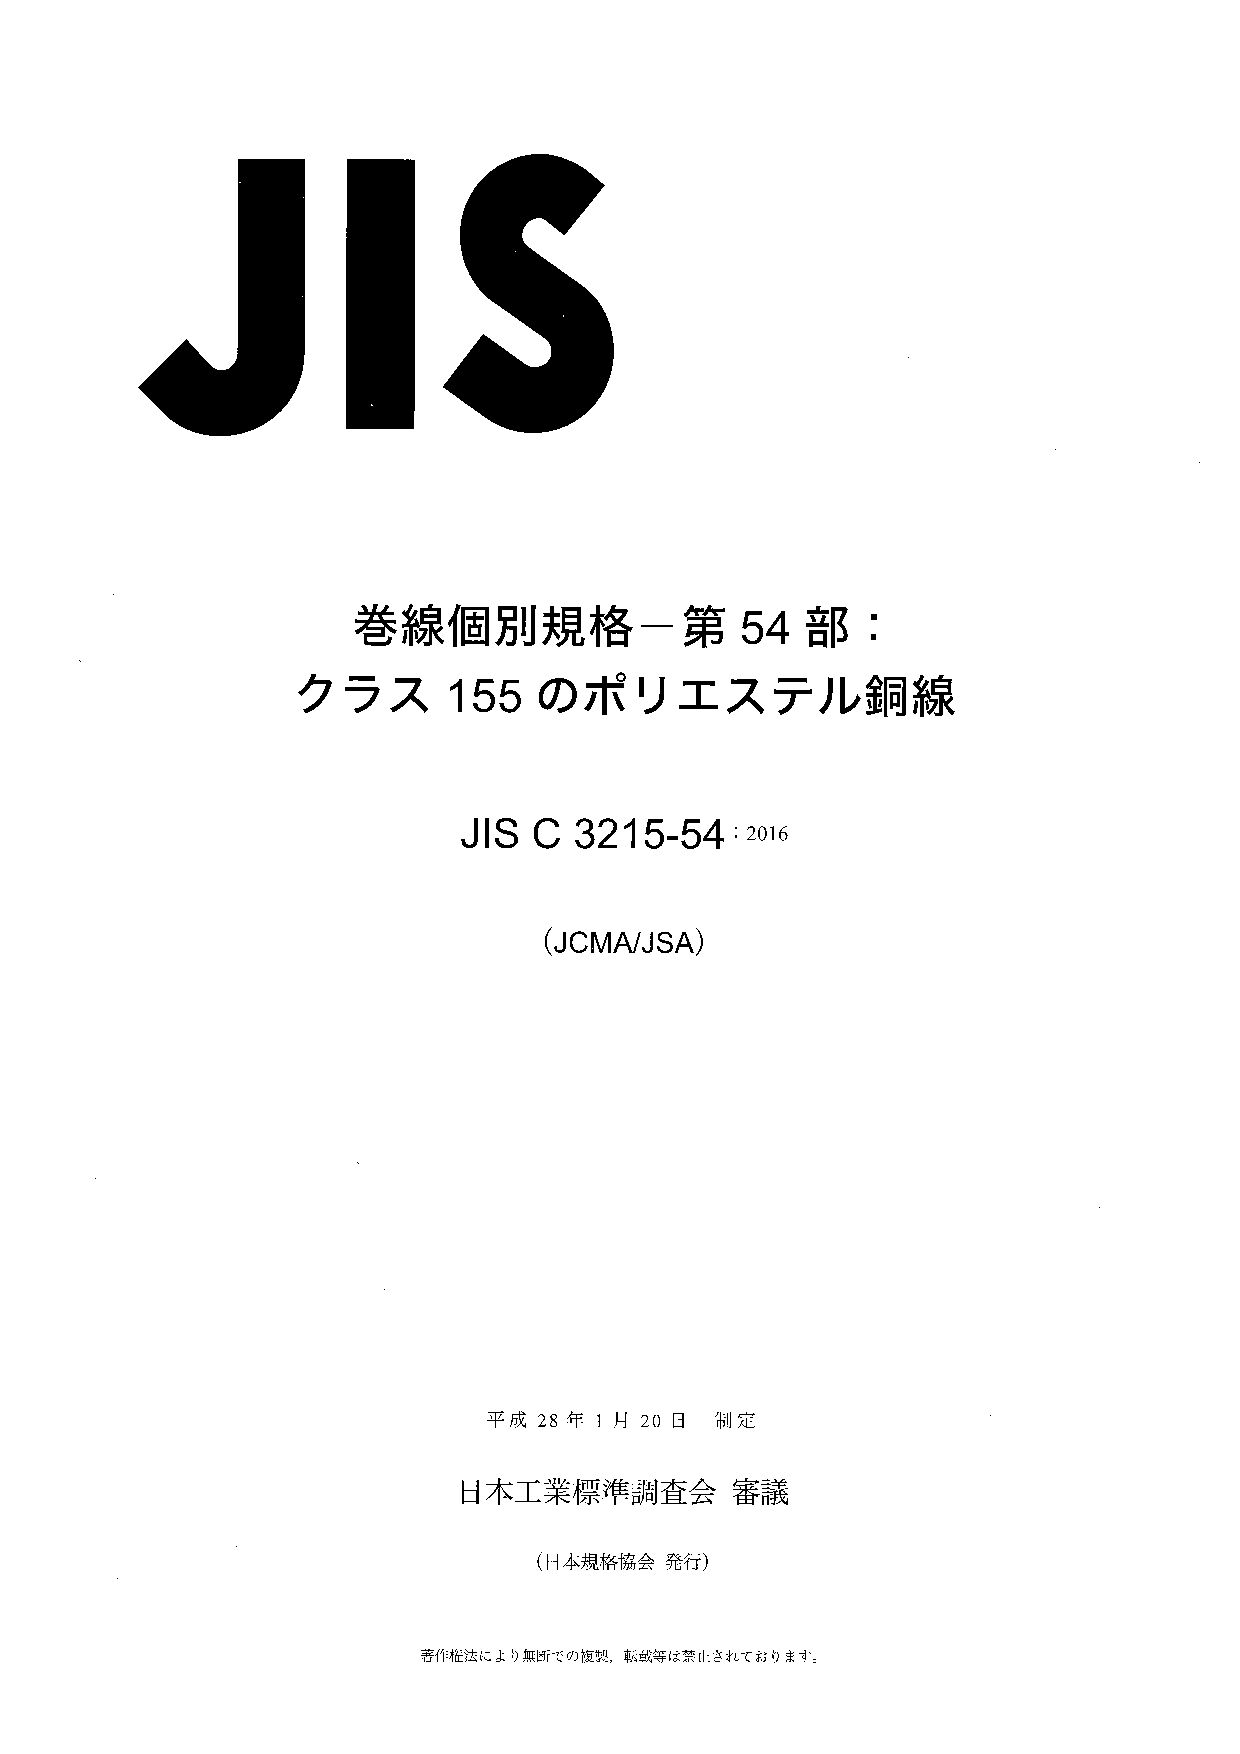 JIS C 3215-54:2016